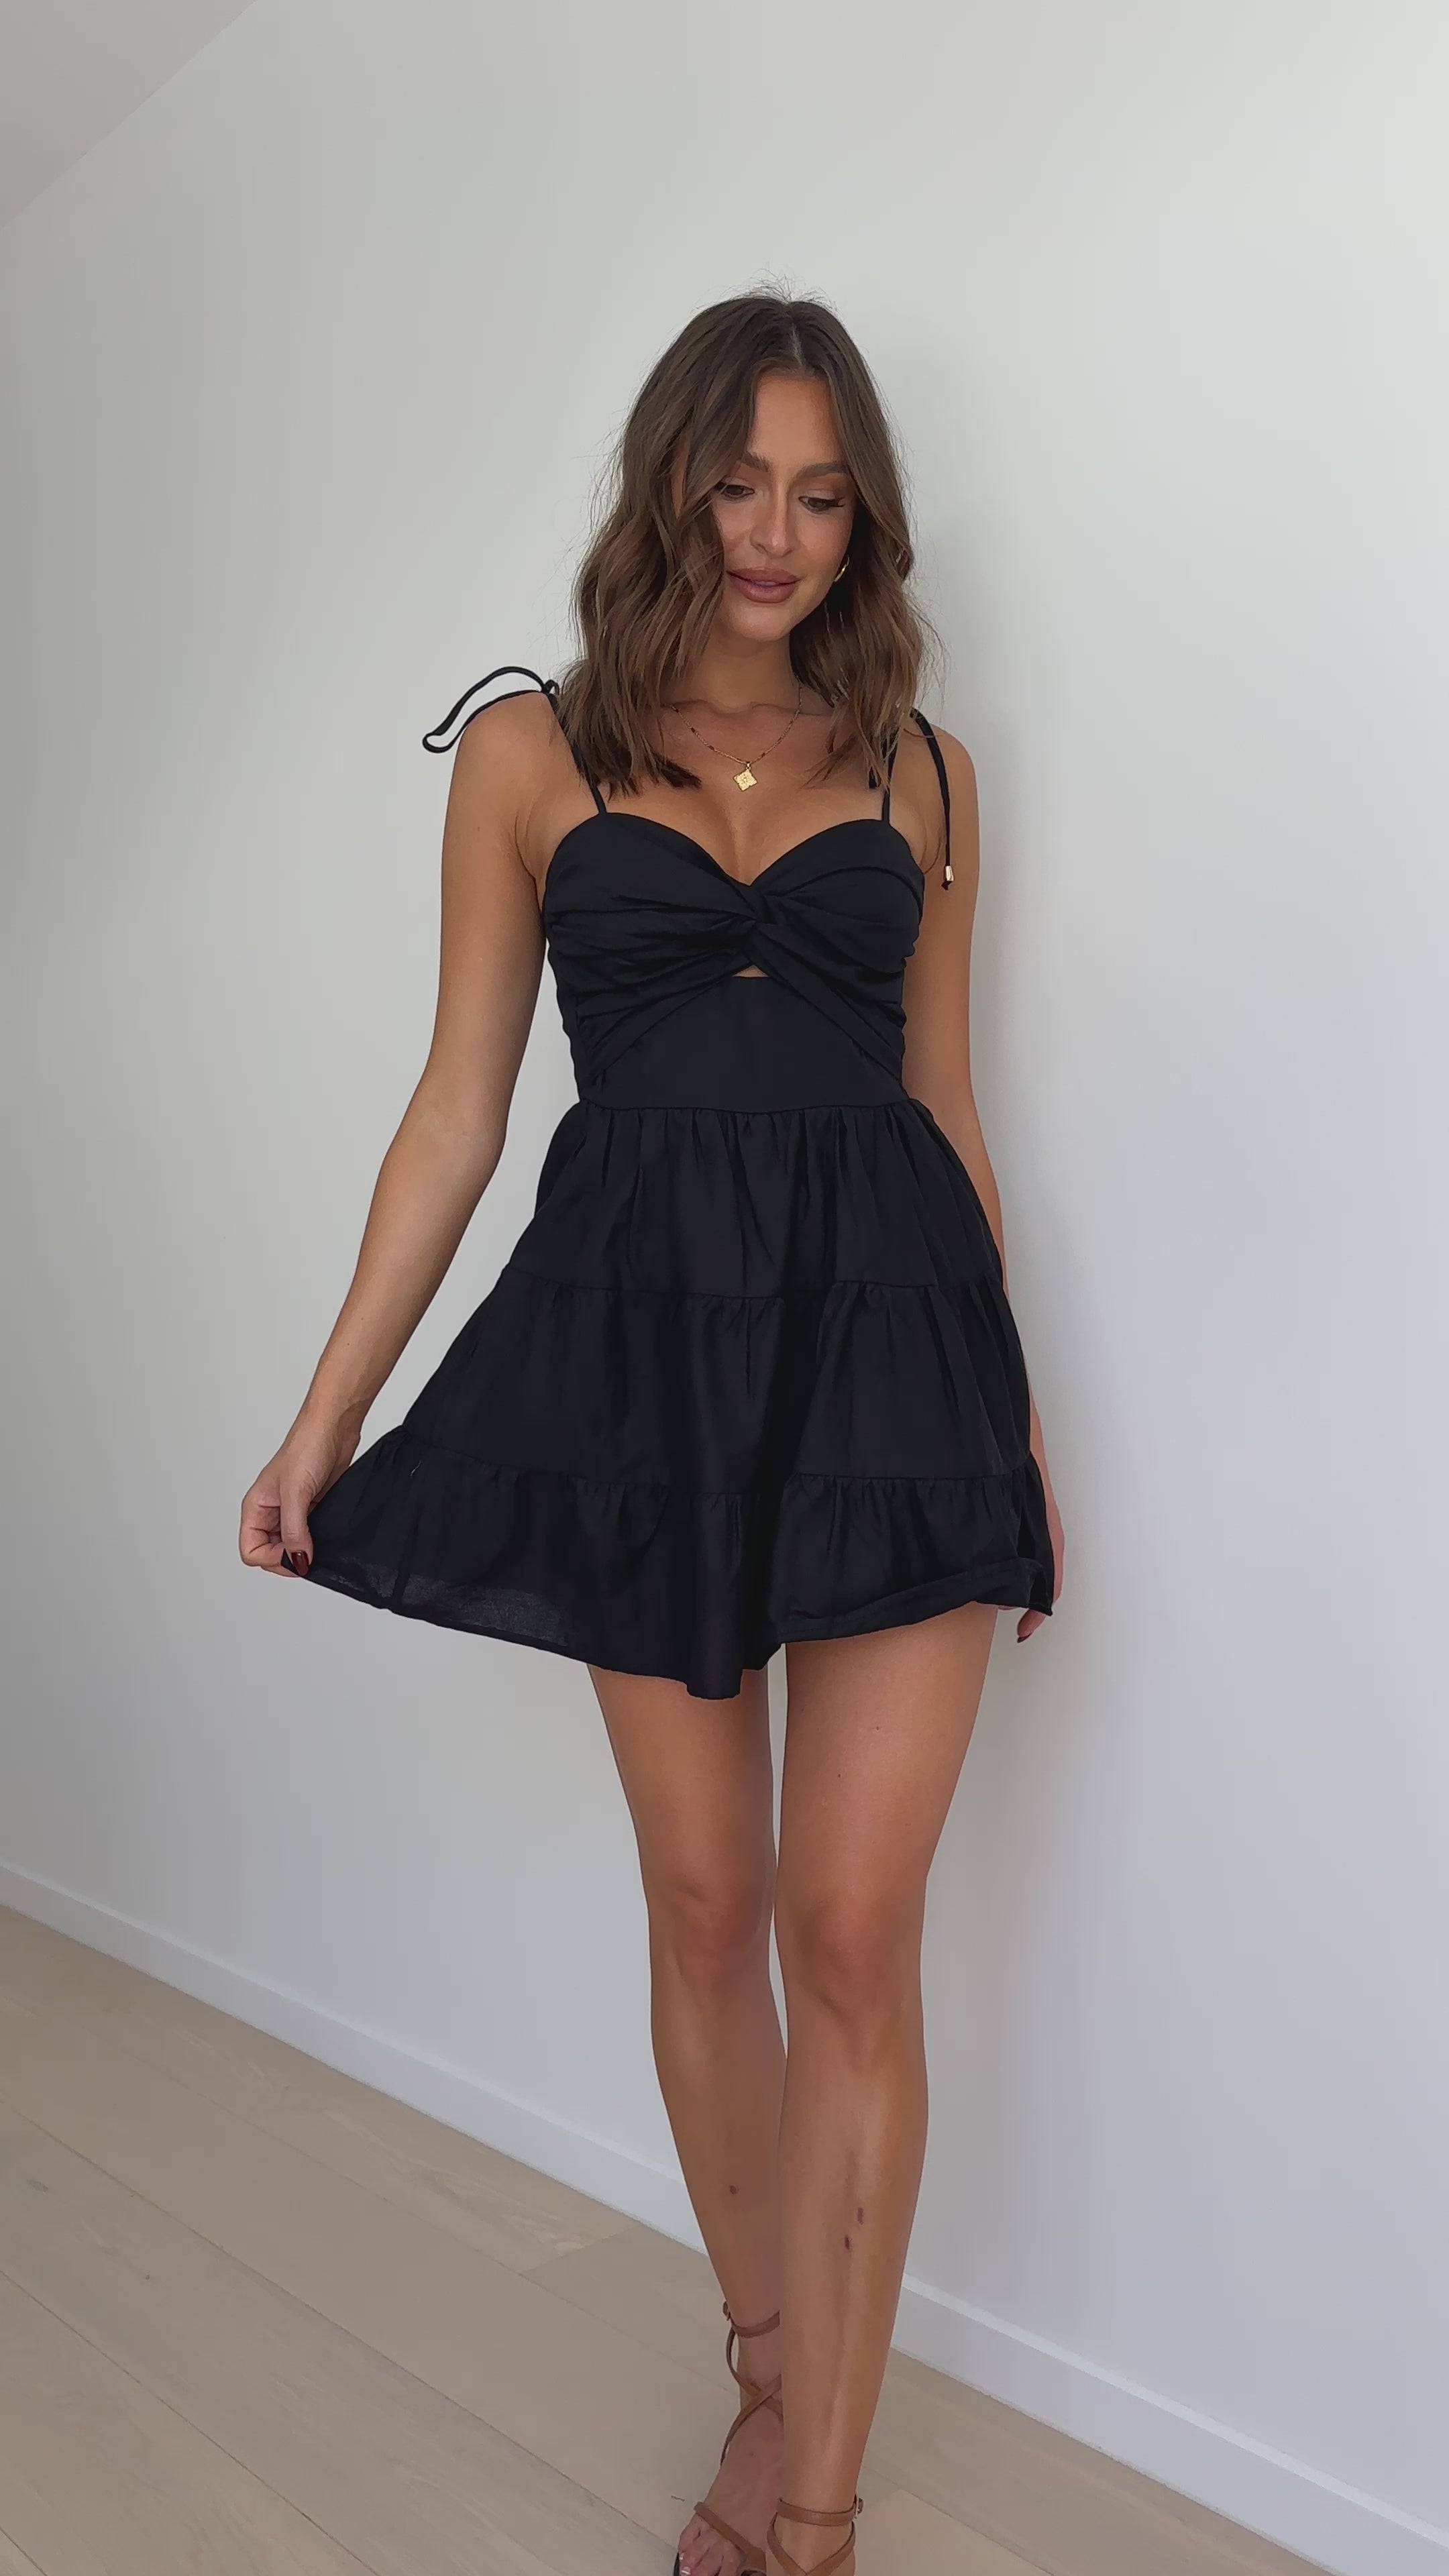 Armani Mini Dress - Black